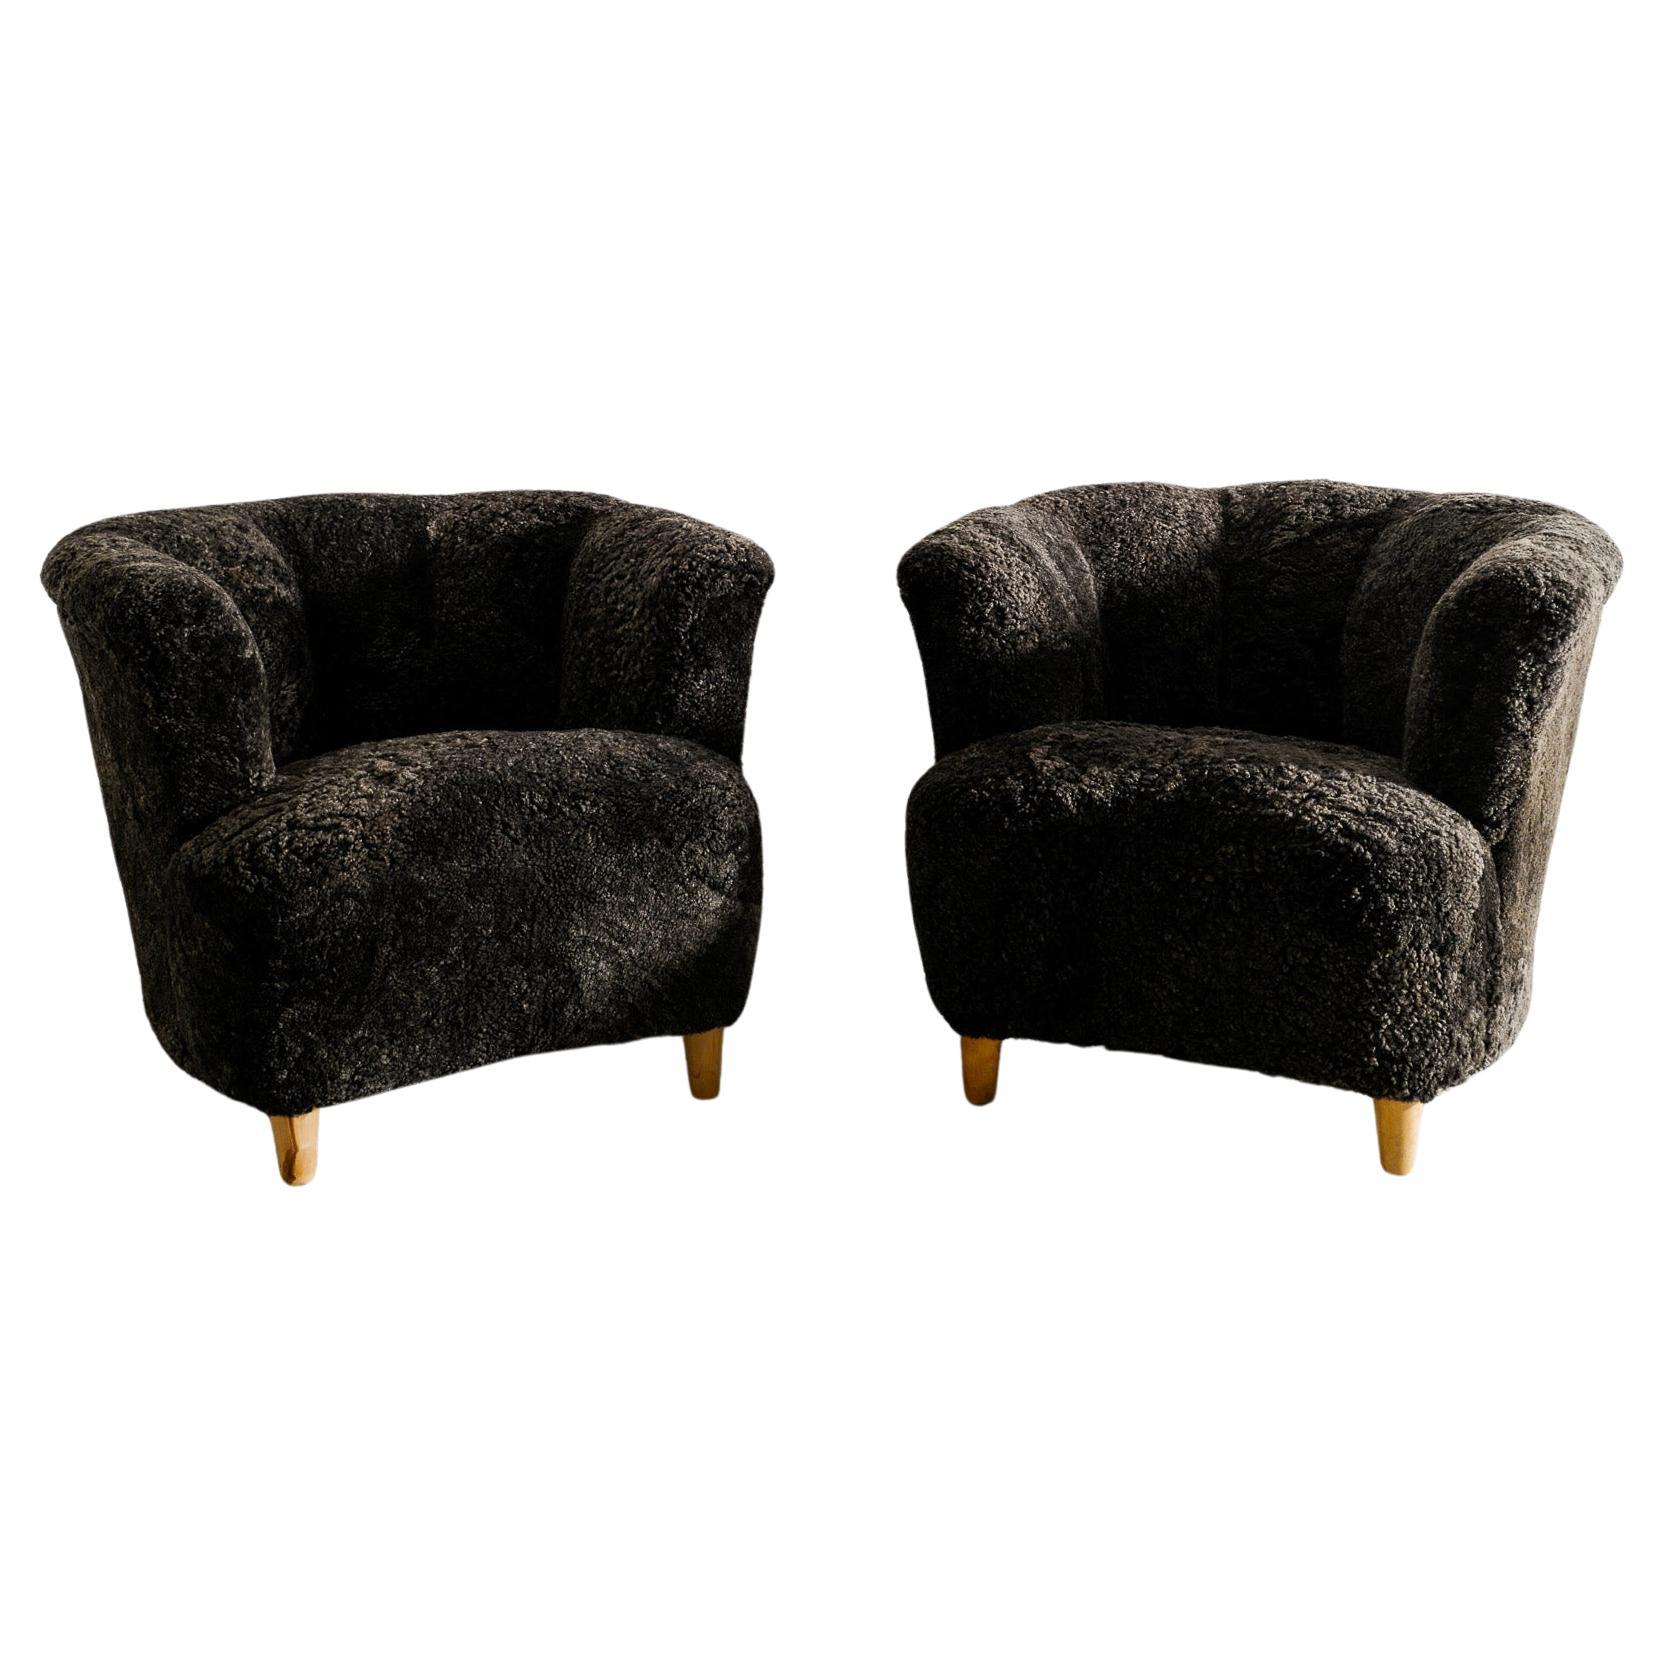 Paire de fauteuils de salon modernes suédois incurvés en peau de mouton grise produites dans les années 1940